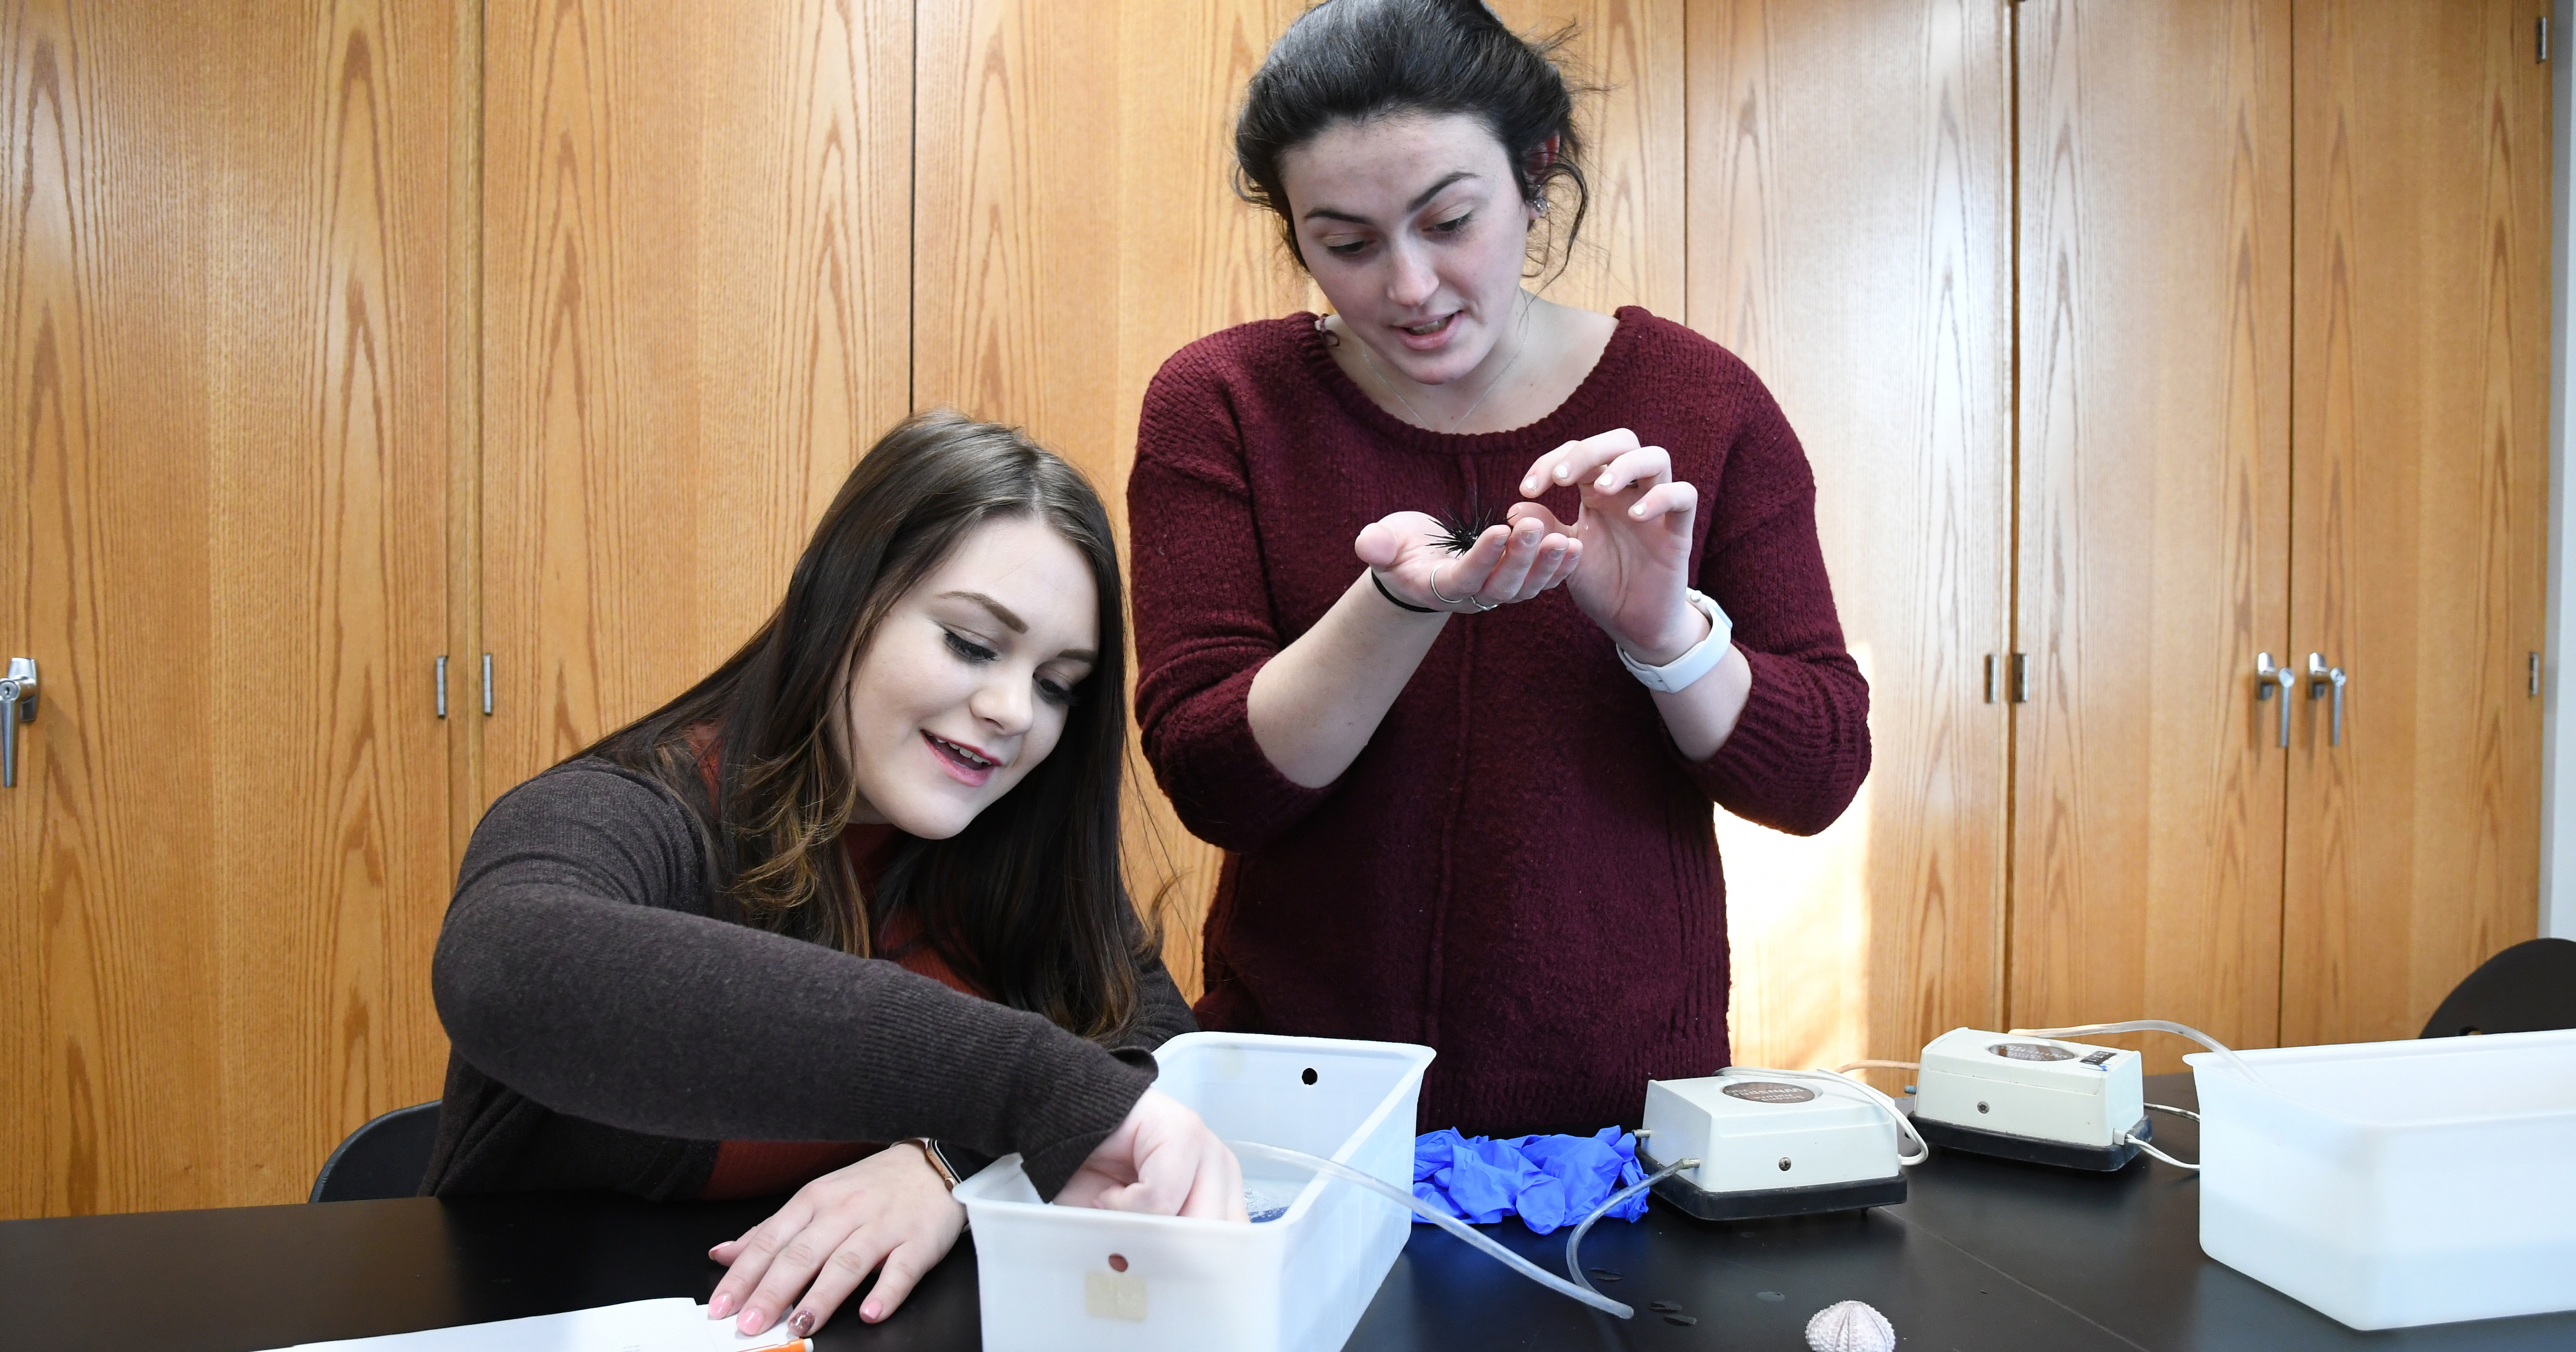 Students analyze specimens in lab